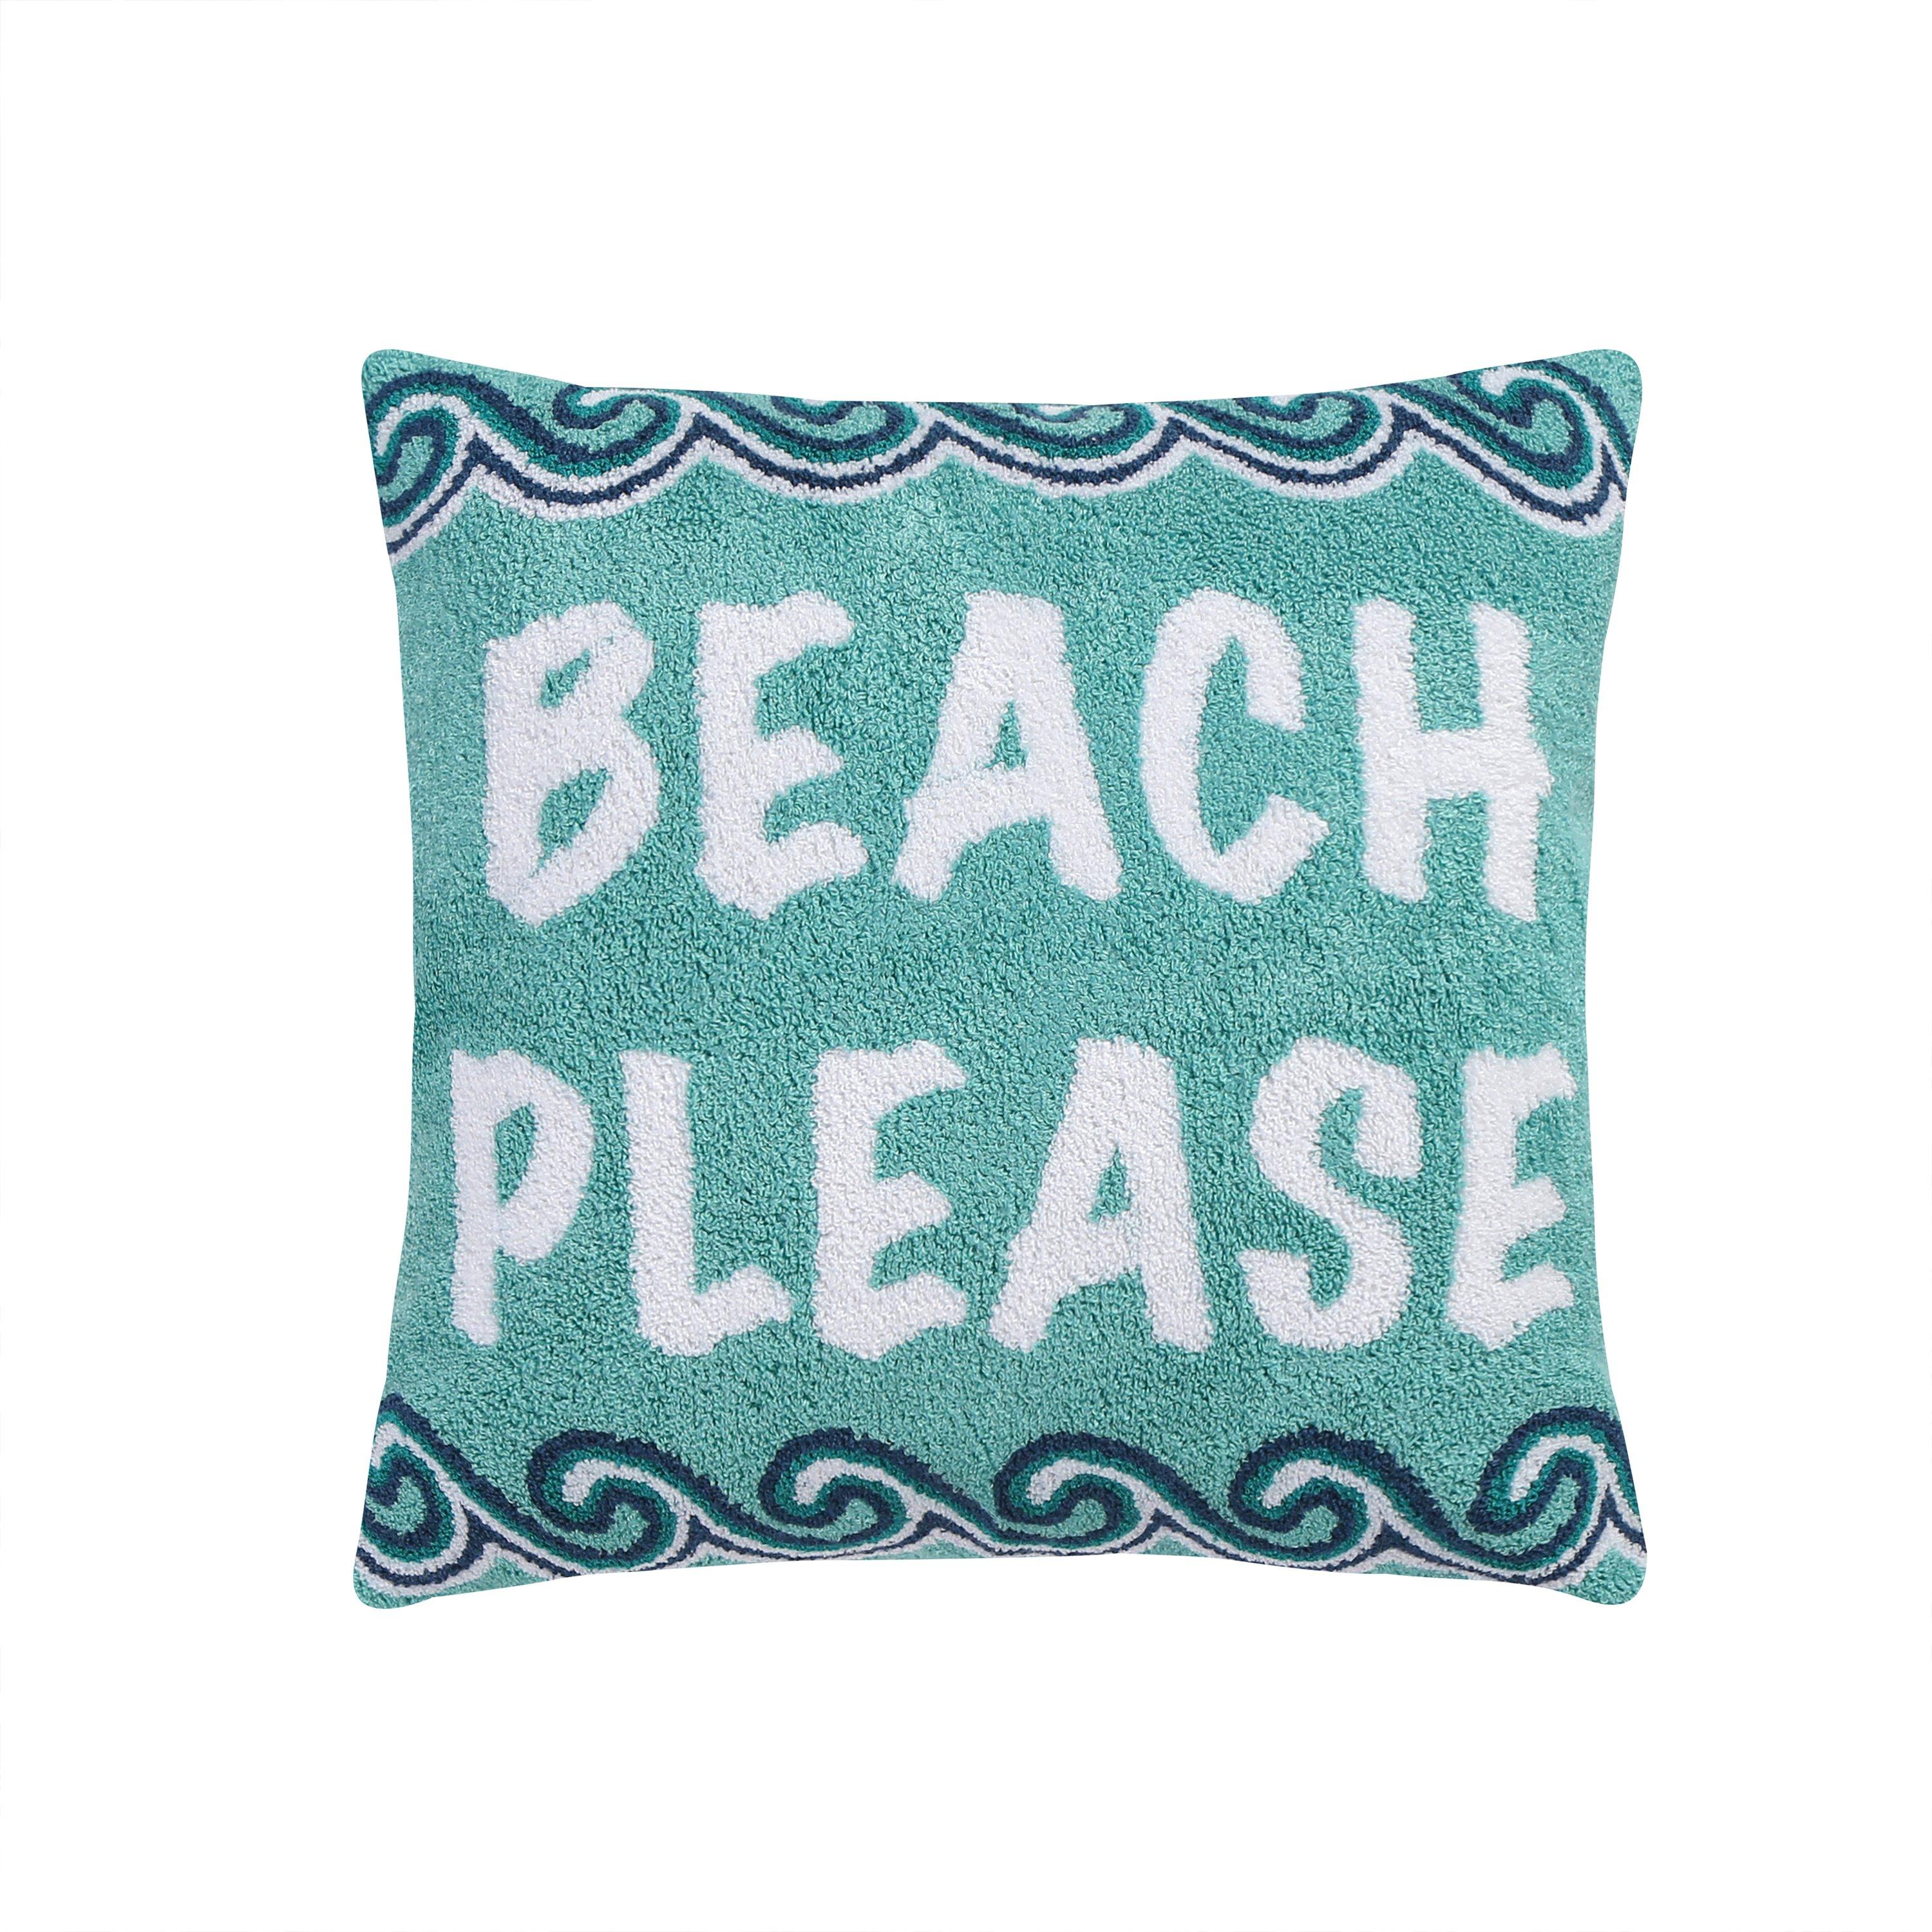 Coastal Beach Days Beach Please Pillow